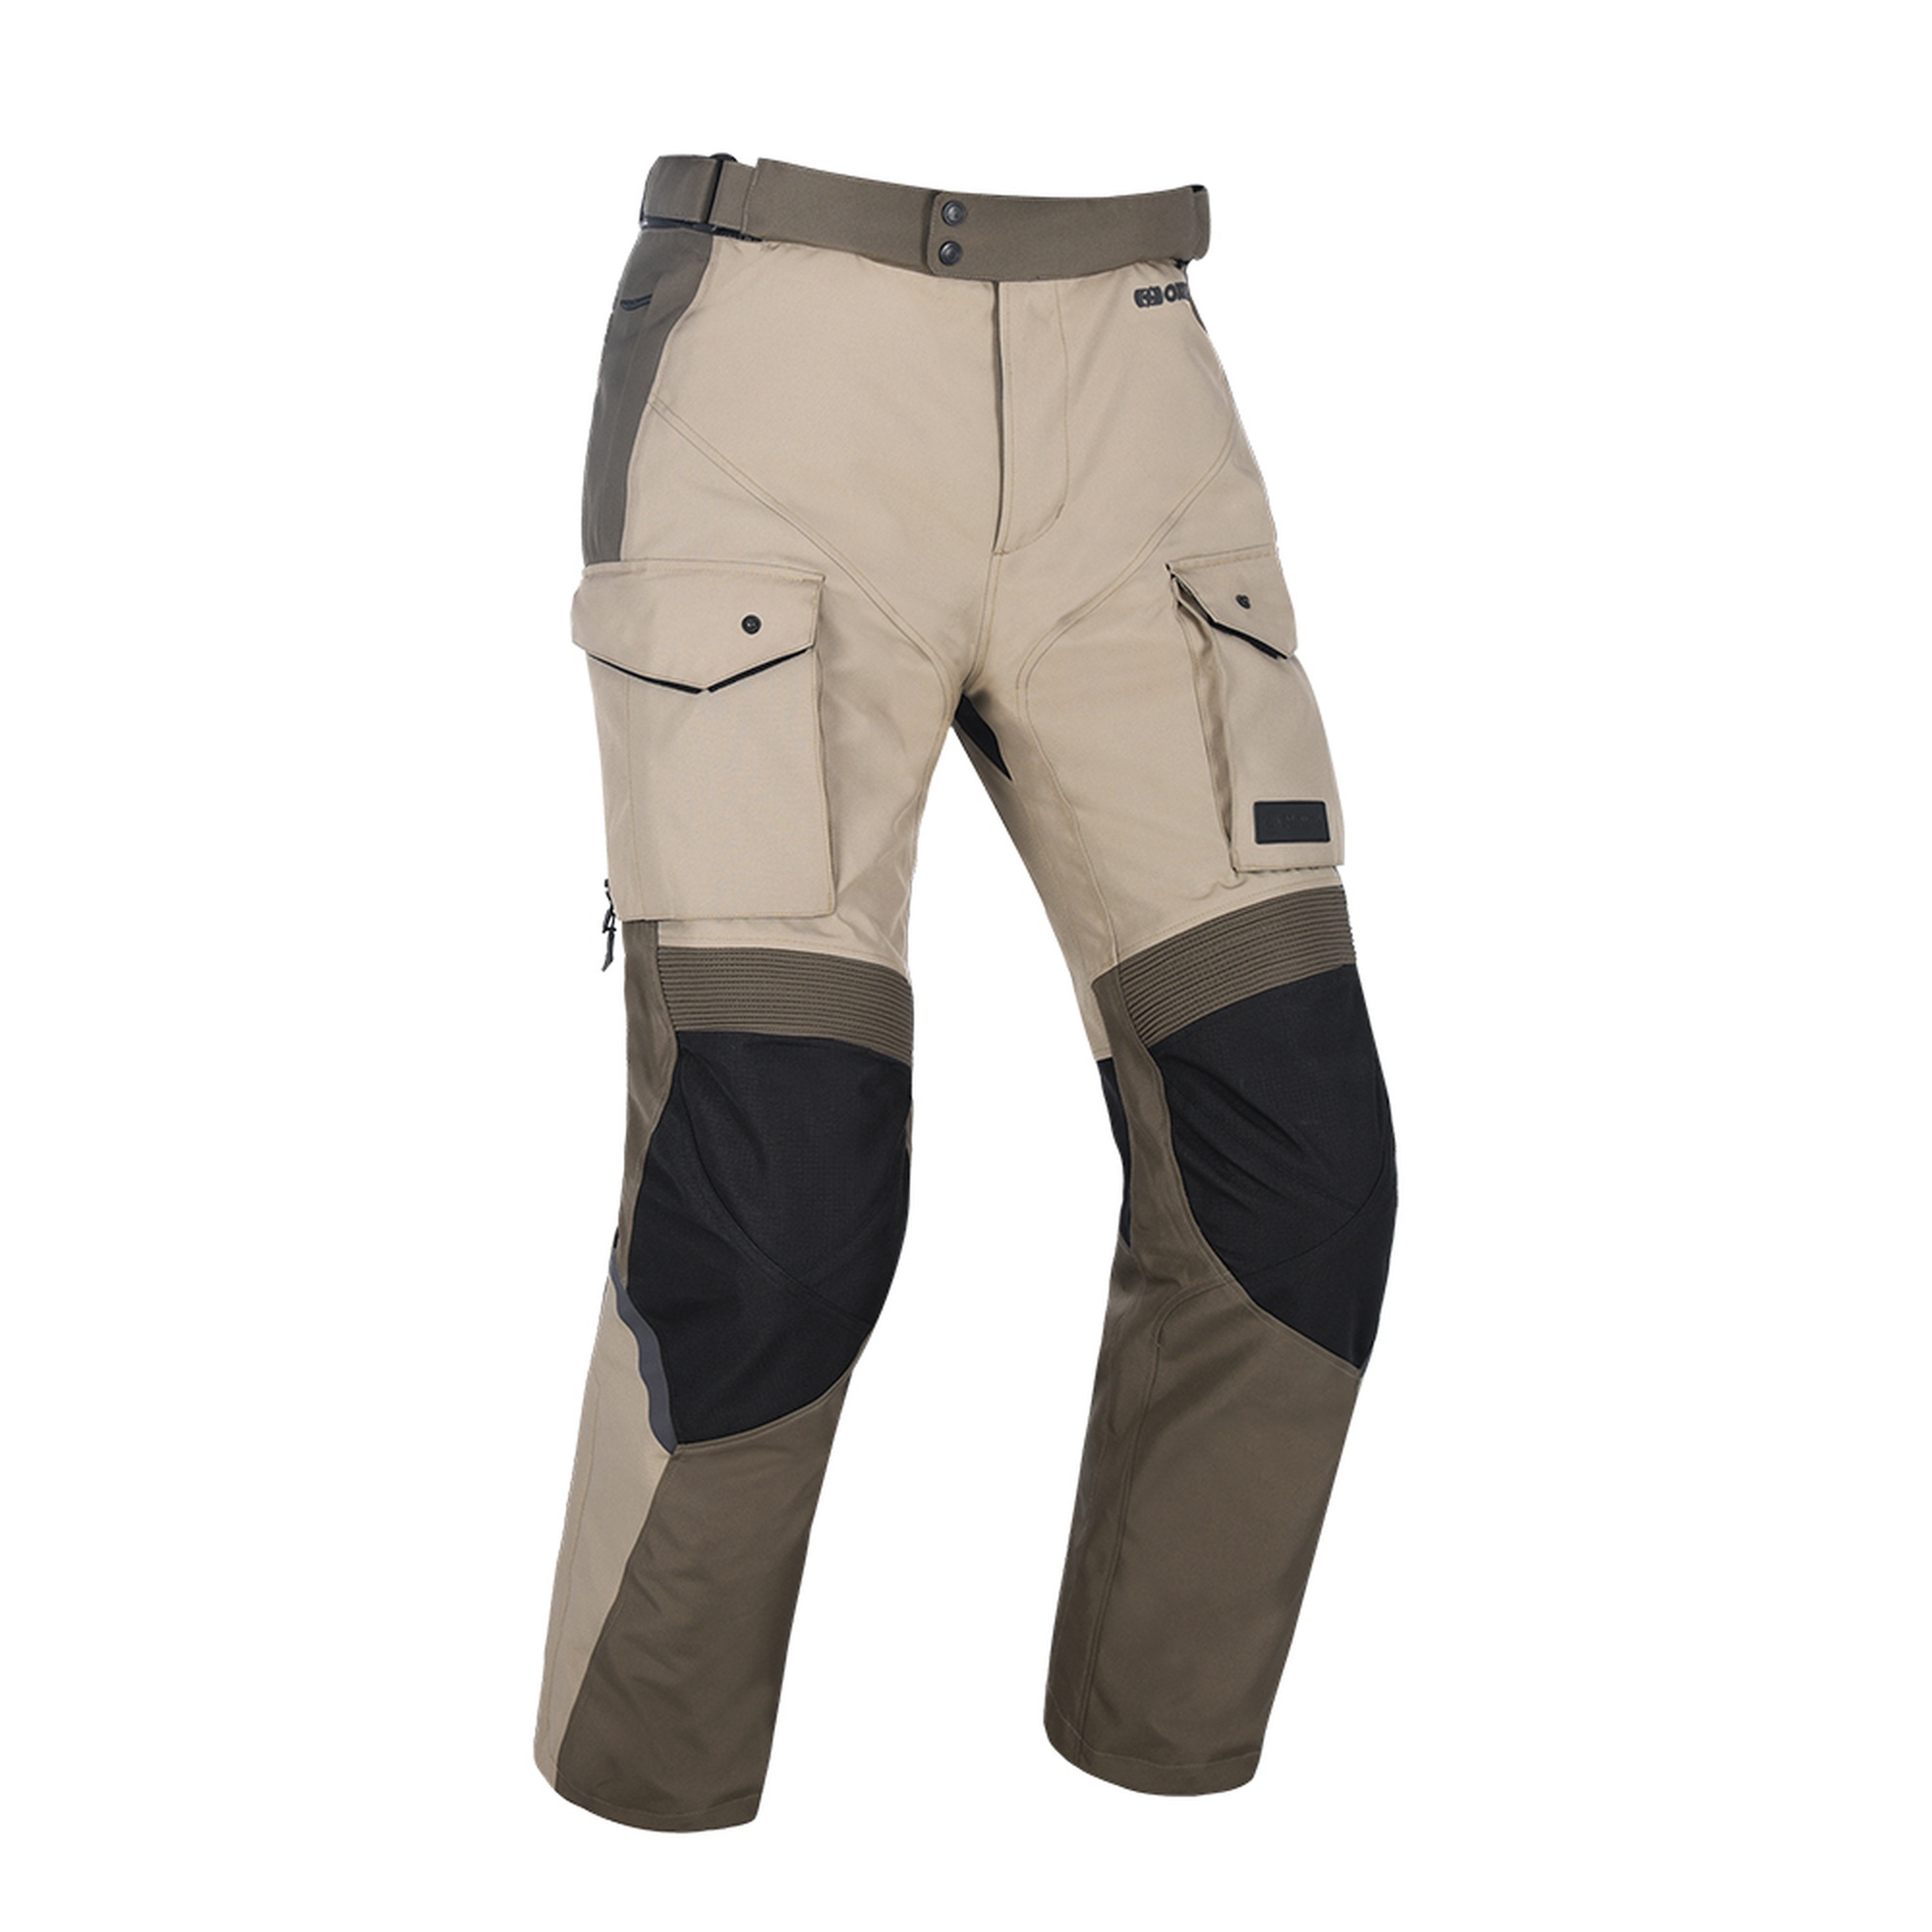 Obrázek produktu kalhoty CONTINENTAL, OXFORD ADVANCED (světle pískové)